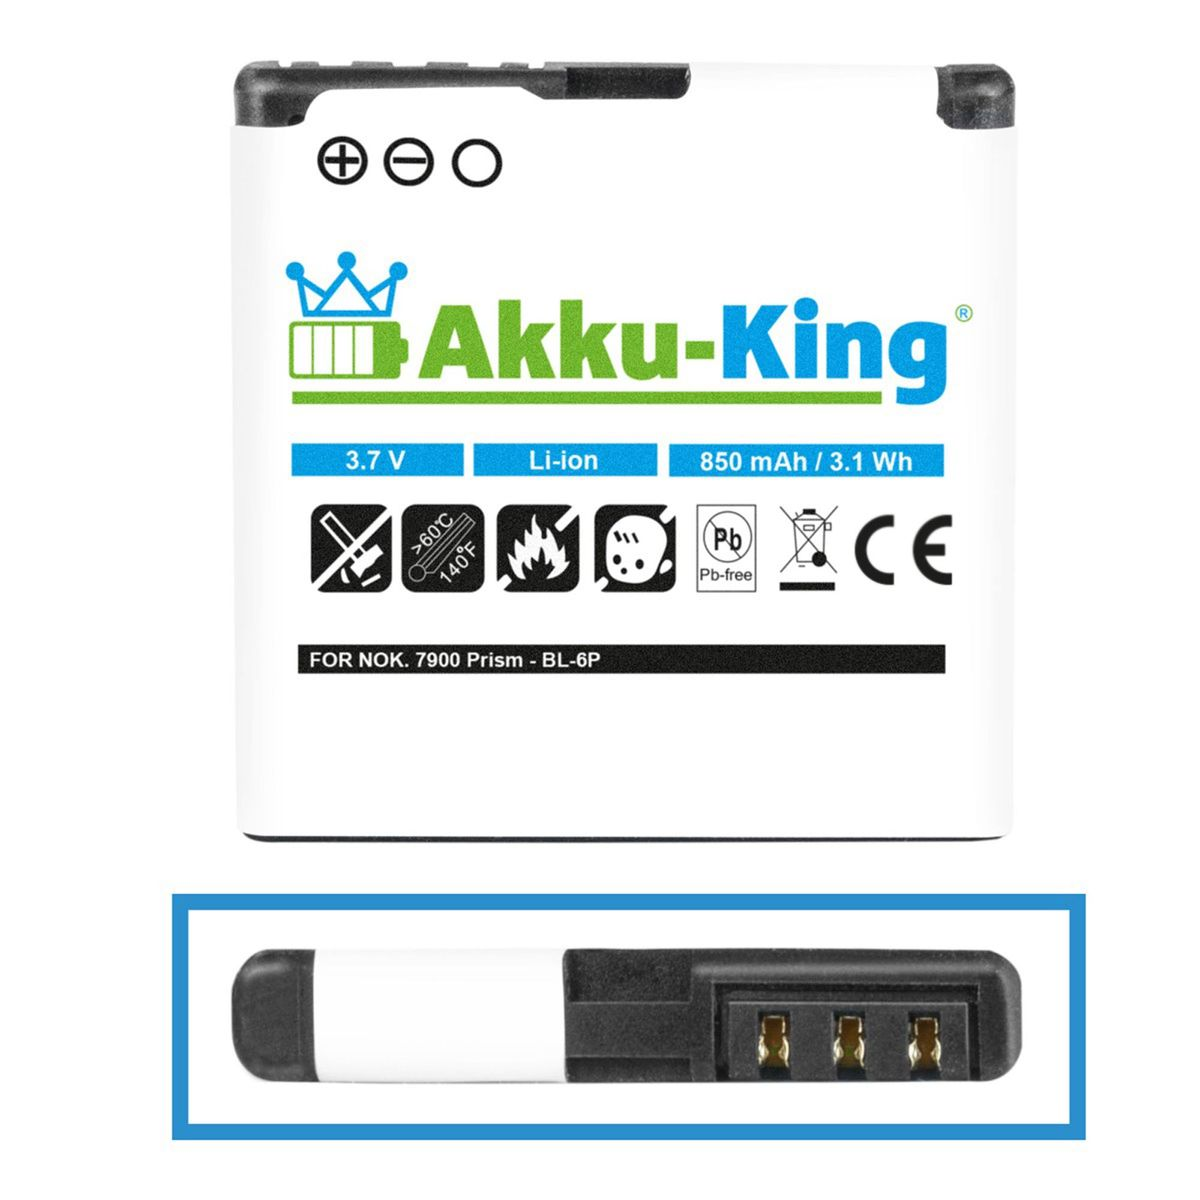 mit 850mAh AKKU-KING Volt, 3.7 BP-6P Li-Ion kompatibel Handy-Akku, Nokia Akku